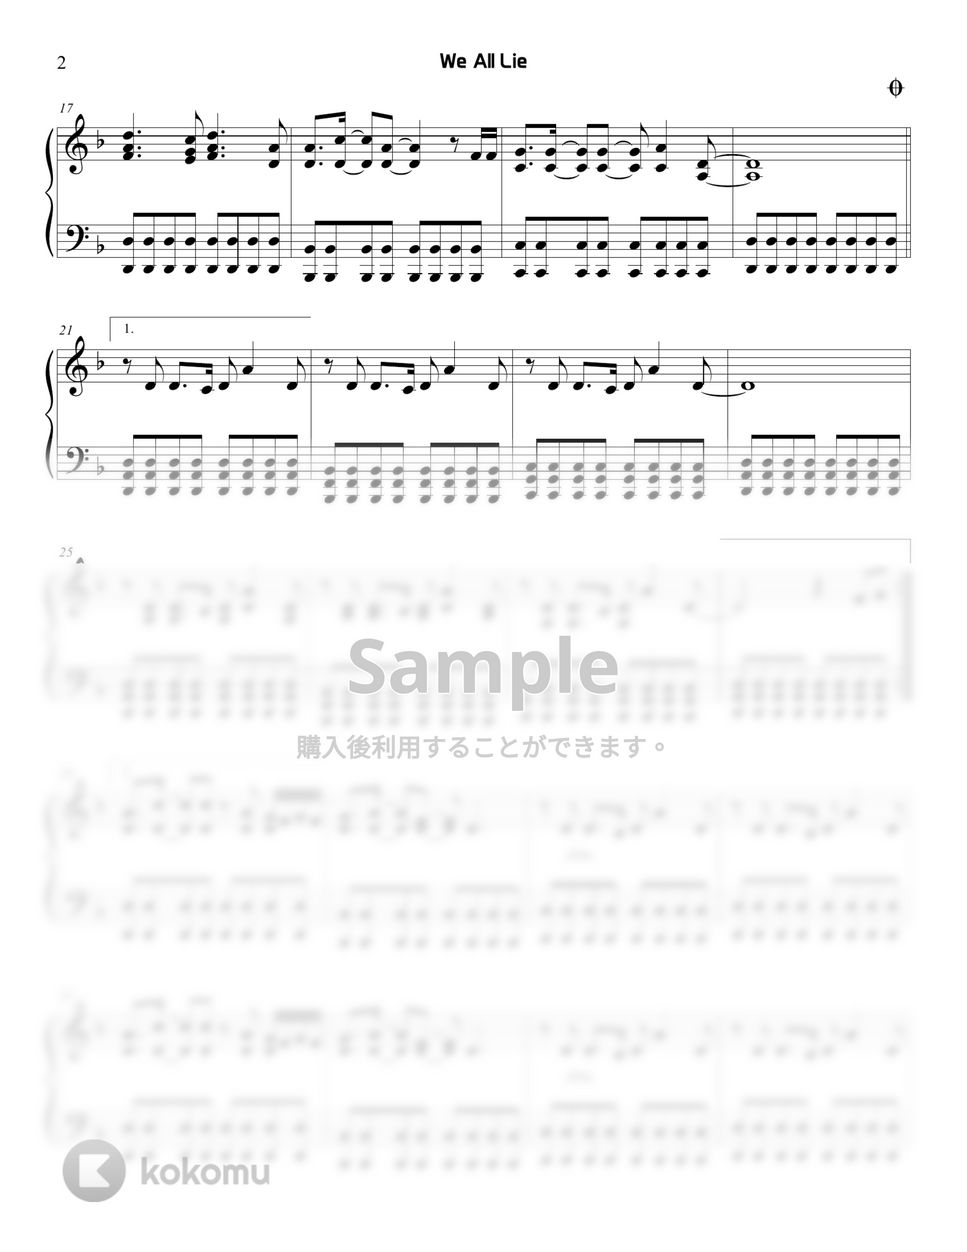 ハジン - We All Lie (SKYキャッスル) by Sunny Fingers Piano